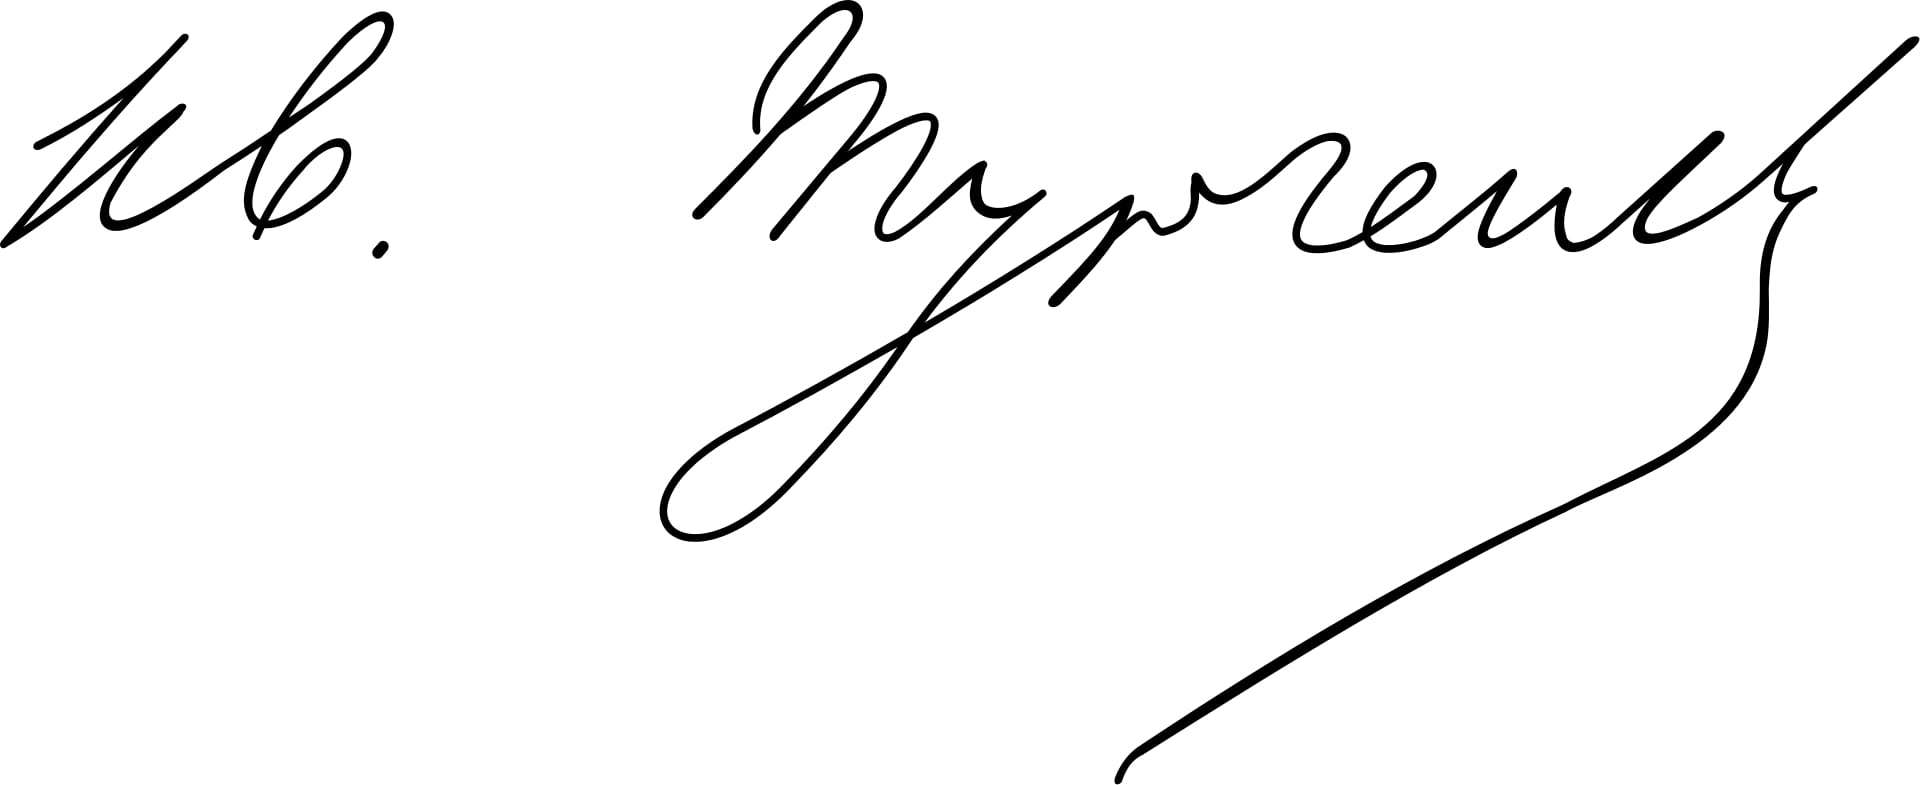 Ivan Turgenev Signature